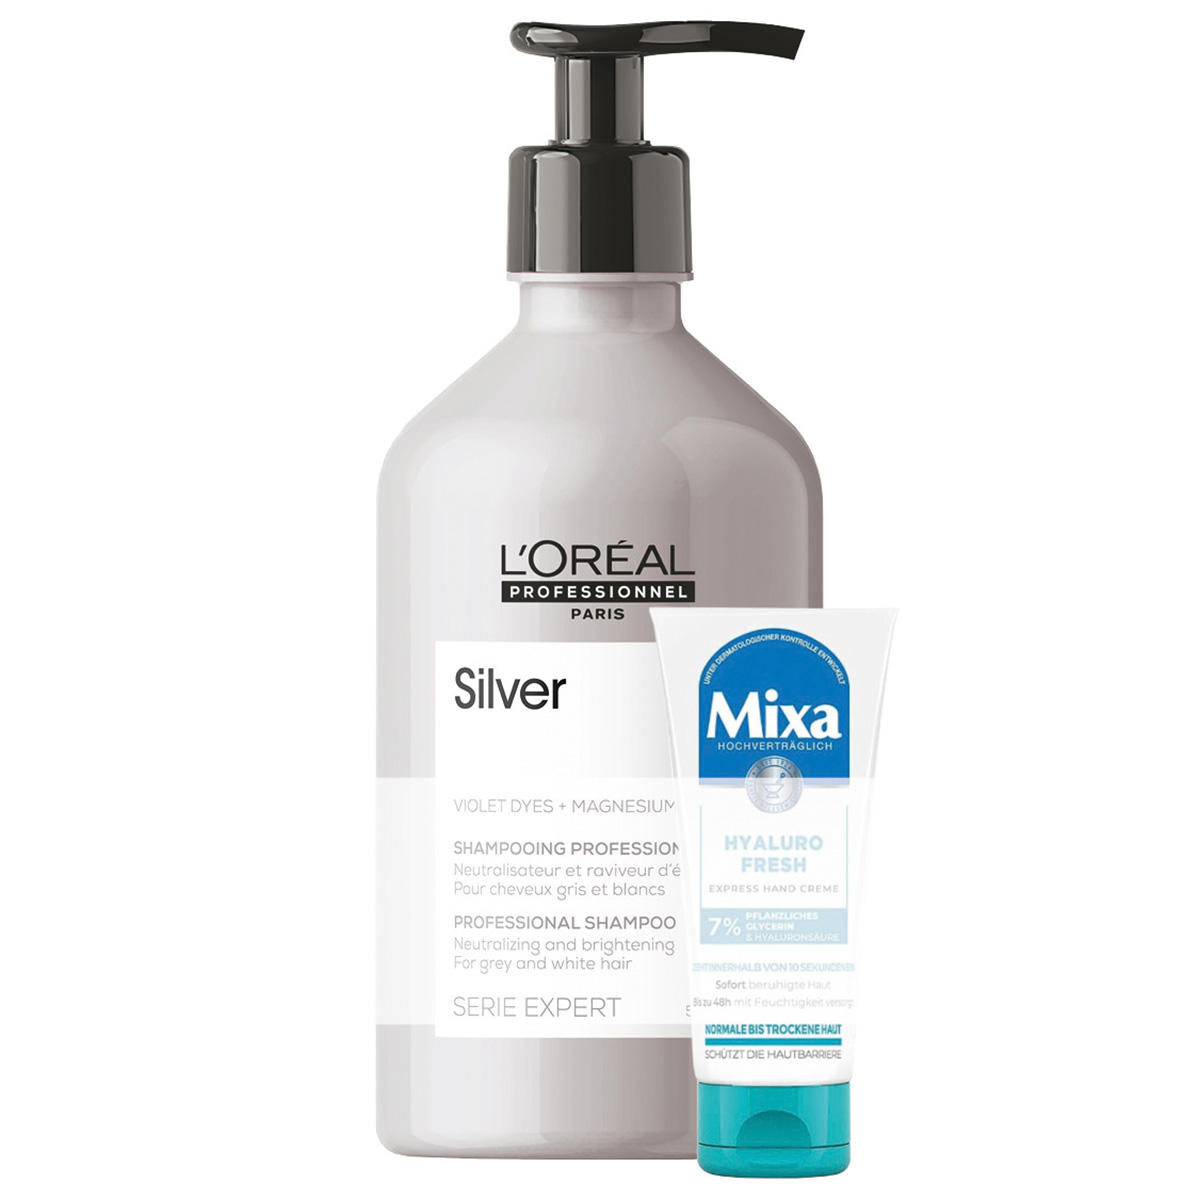 L'Oréal Professionnel Paris Serie Expert Silver Professional Shampoo 500 ml + Geschenk - 1